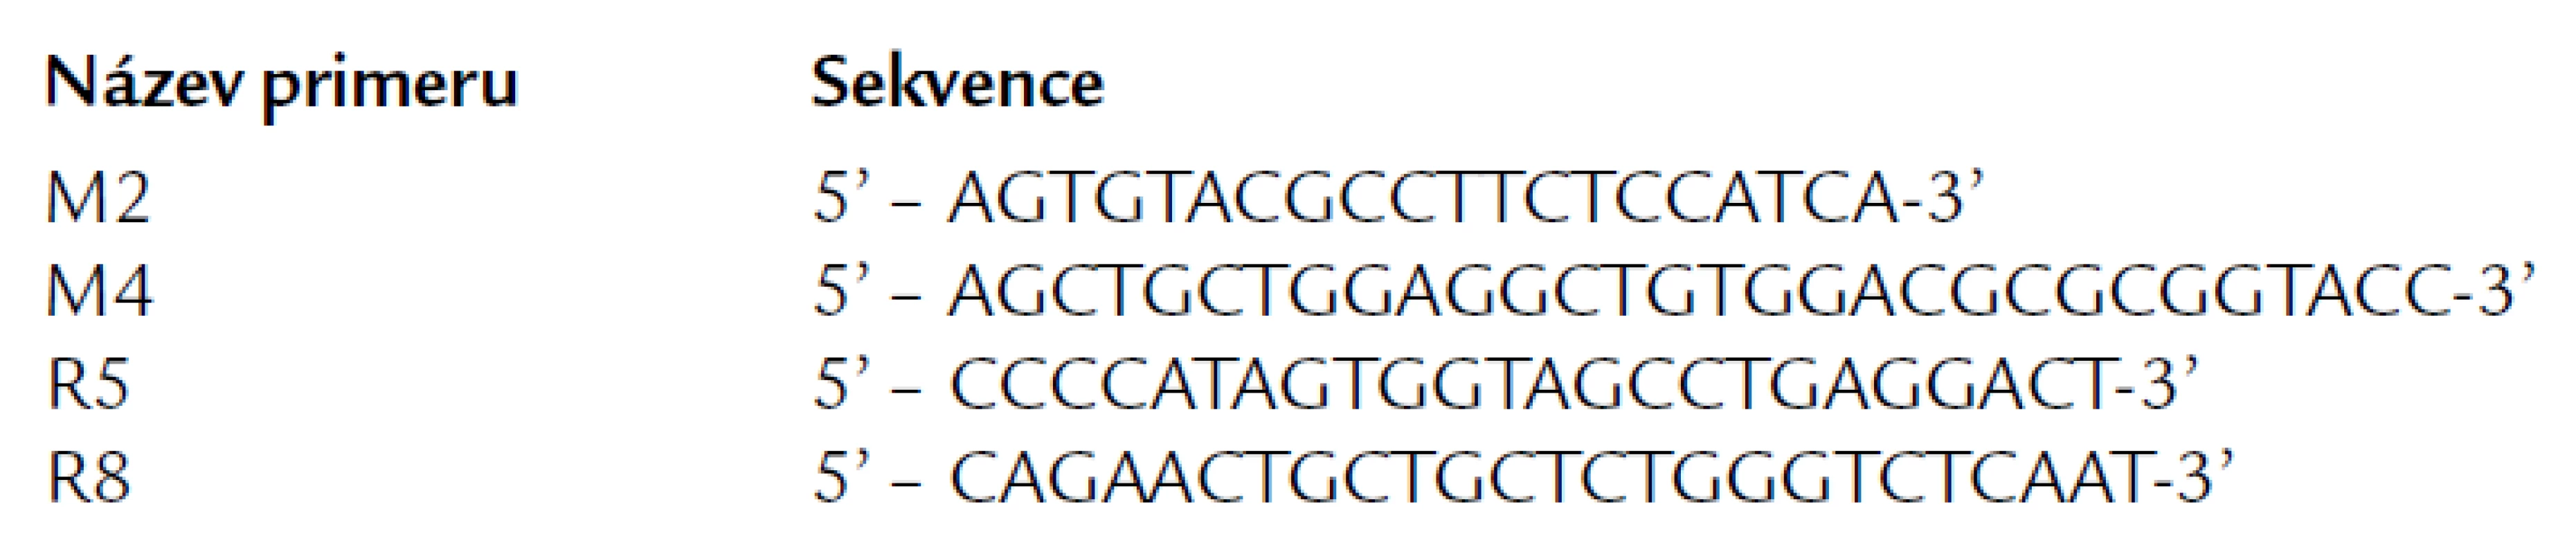 Sekvence primerů používaných v ÚHKT pro záchyt PML/RARa i detekci minimálního reziduálního onemocnění. Jsou velmi podobné (nikoli identické) s primery publikovanými Biondim et al [27], jsou i stejně označeny. M2 a M4 jsou přední primery, R5 a R8 reverzní. Místa jejich hybridizace s cDNA jsou znázorněna na obr. 7. Pro záchyt L a V transkriptů (se zlomy bcr1 a bcr2 v genu PML) užíváme dvojici primerů M2-R8, PCR produkt má 326 bp. Pro záchyt S transkriptů (se zlomem bcr3) požíváme primery M4‑R8, výsledný PCR produkt je 324 bp dlouhý.